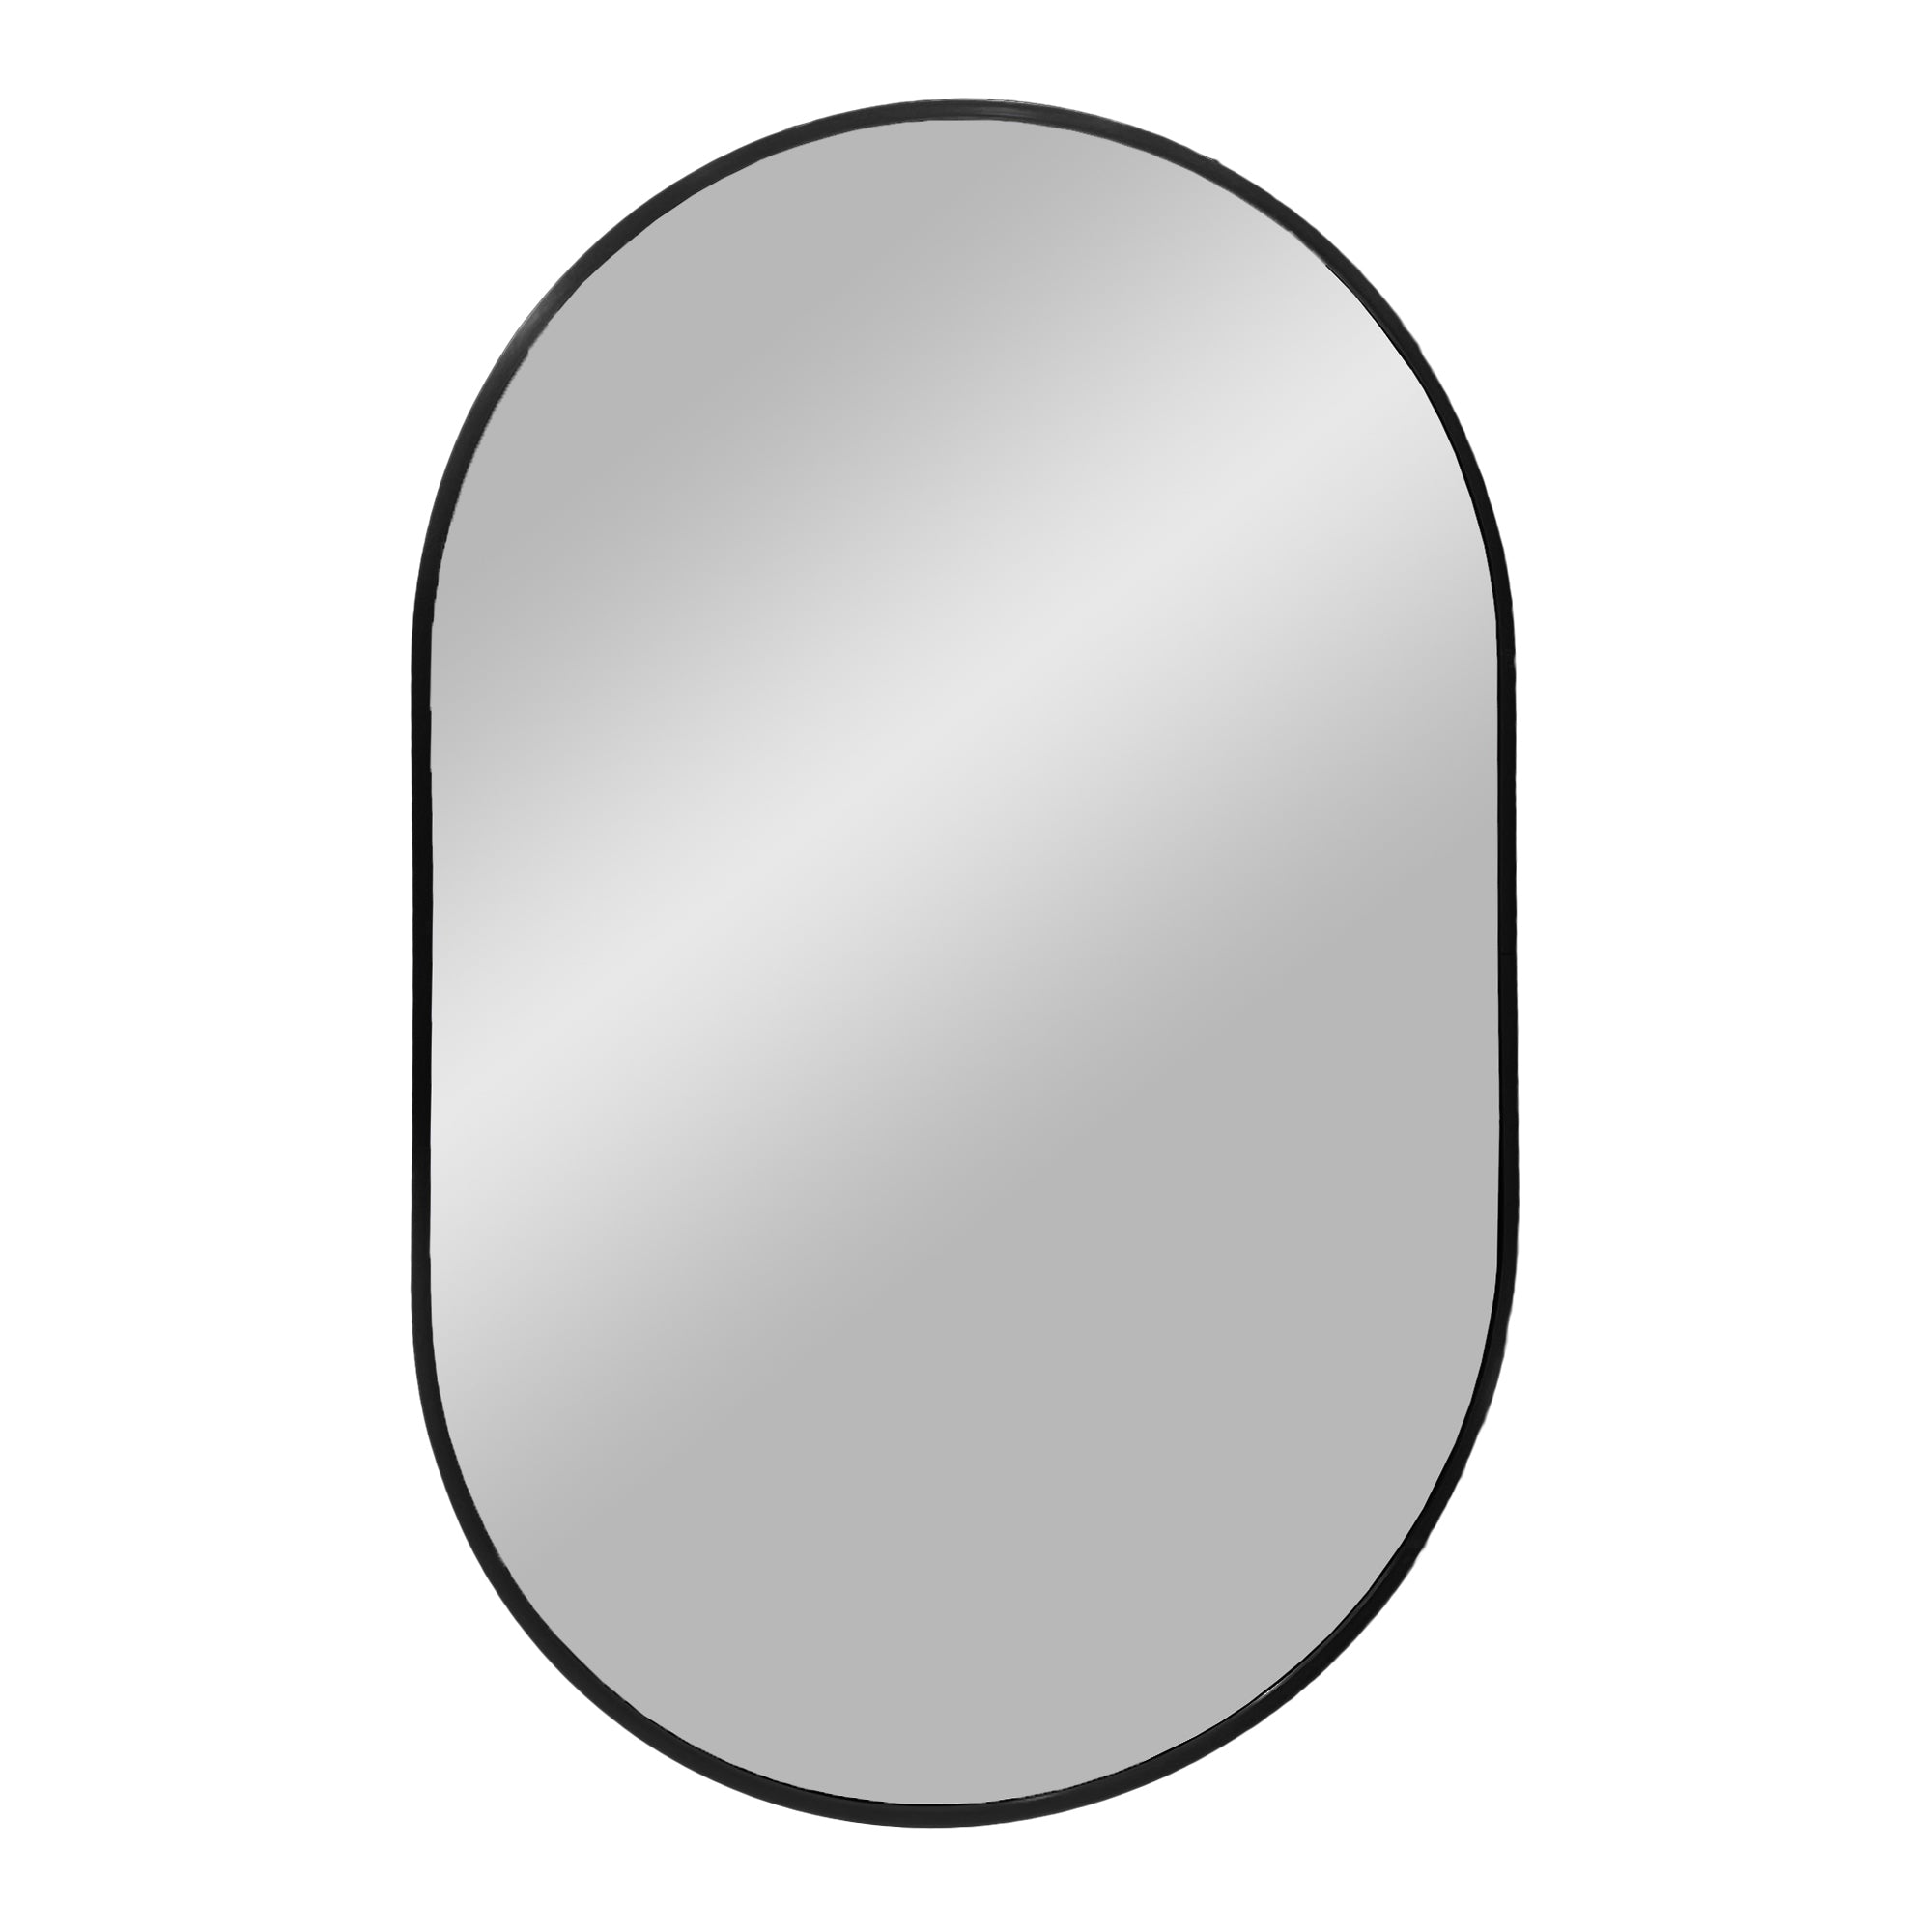 17: Madrid Spejl - Spejl i aluminium, sort, 50x80 cm